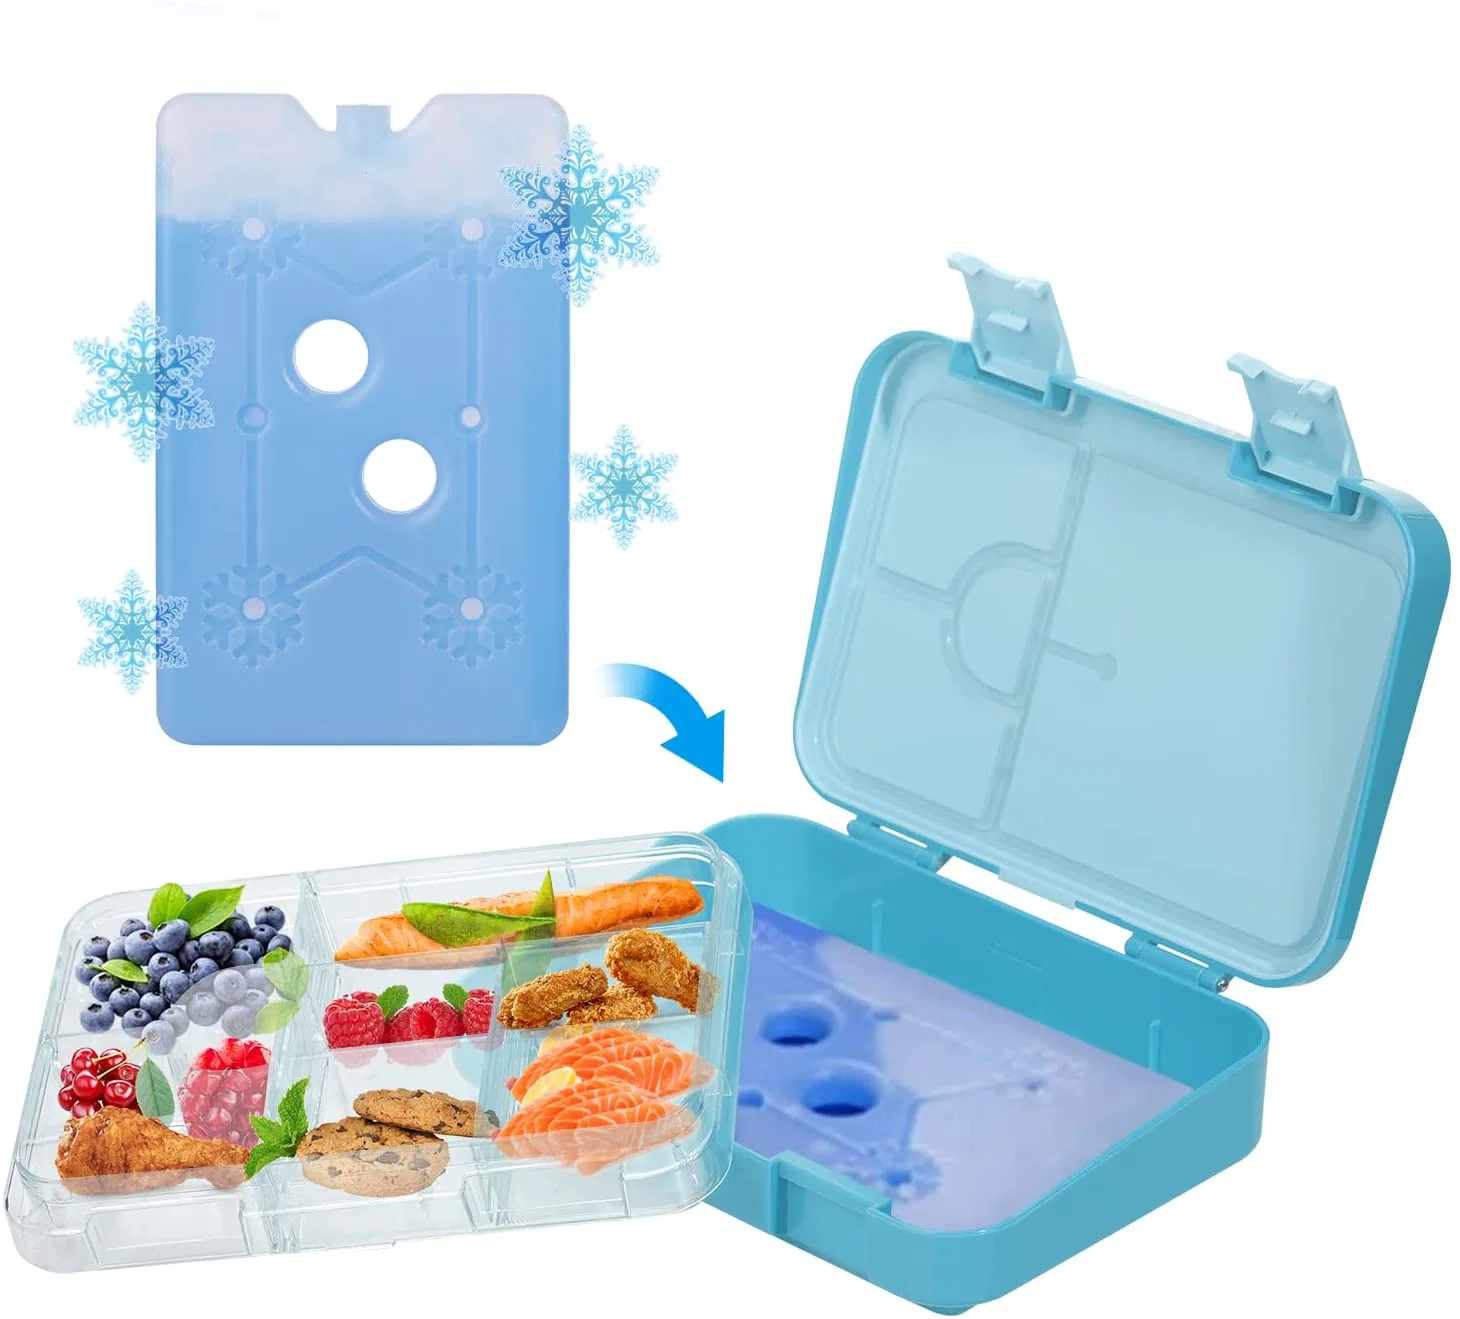 Passe Aohea FDA Resistência a altas temperaturas caixas de almoço para as crianças da escola sem BPA Bento Boxes